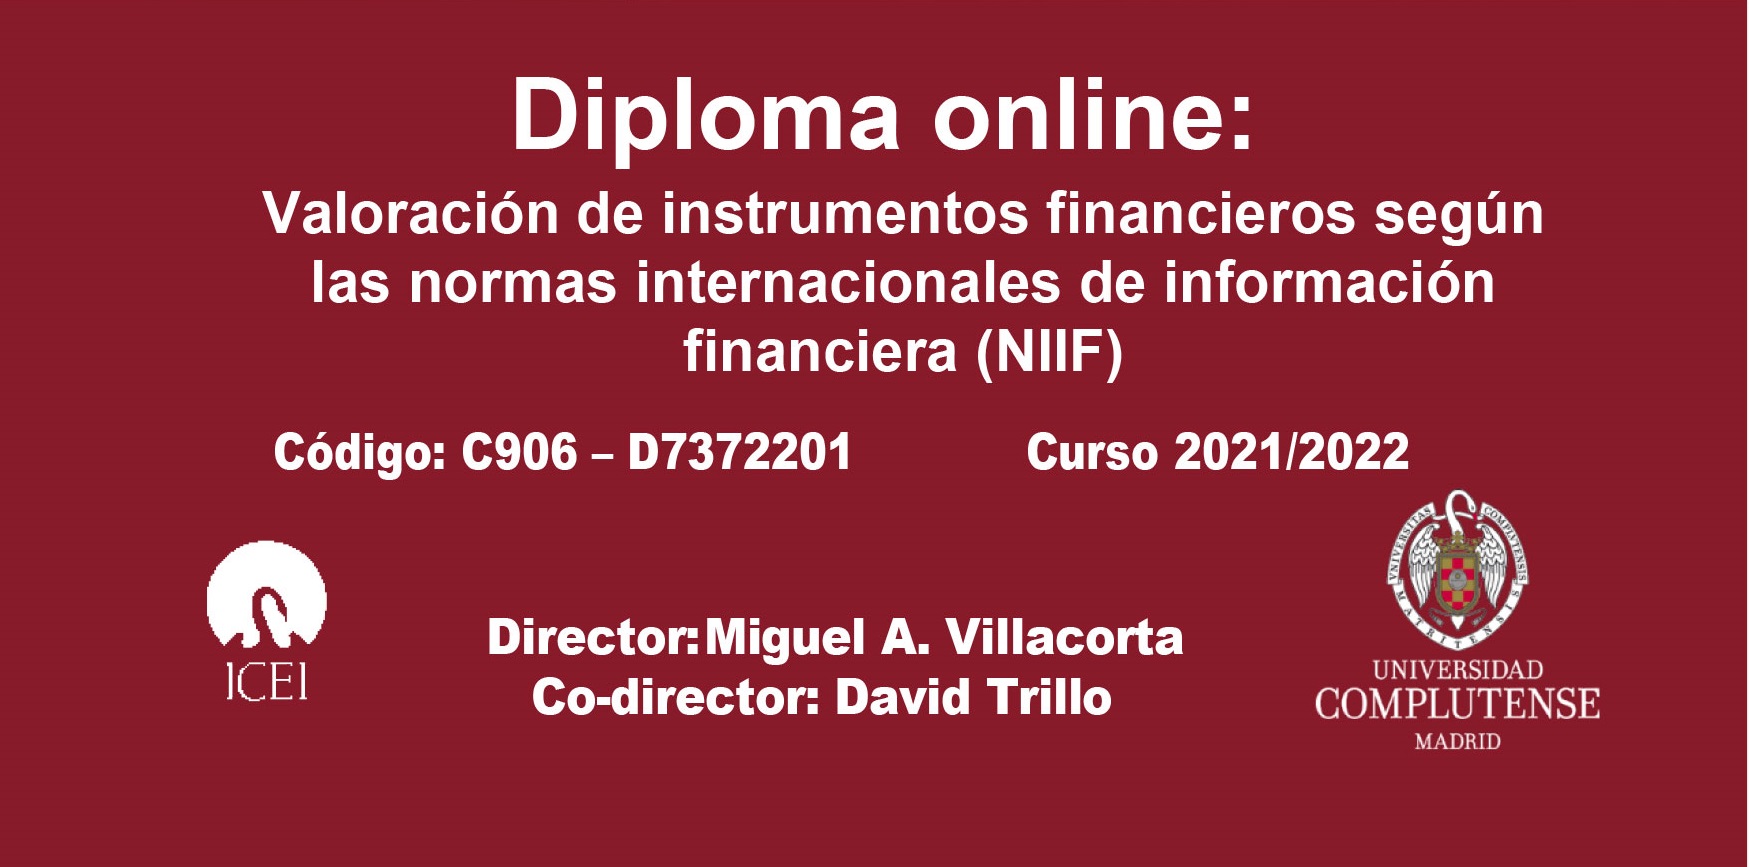 Diploma Online: Valoración de Instrumentos Financieros según las normas internacionales de información financiera (NIIF)